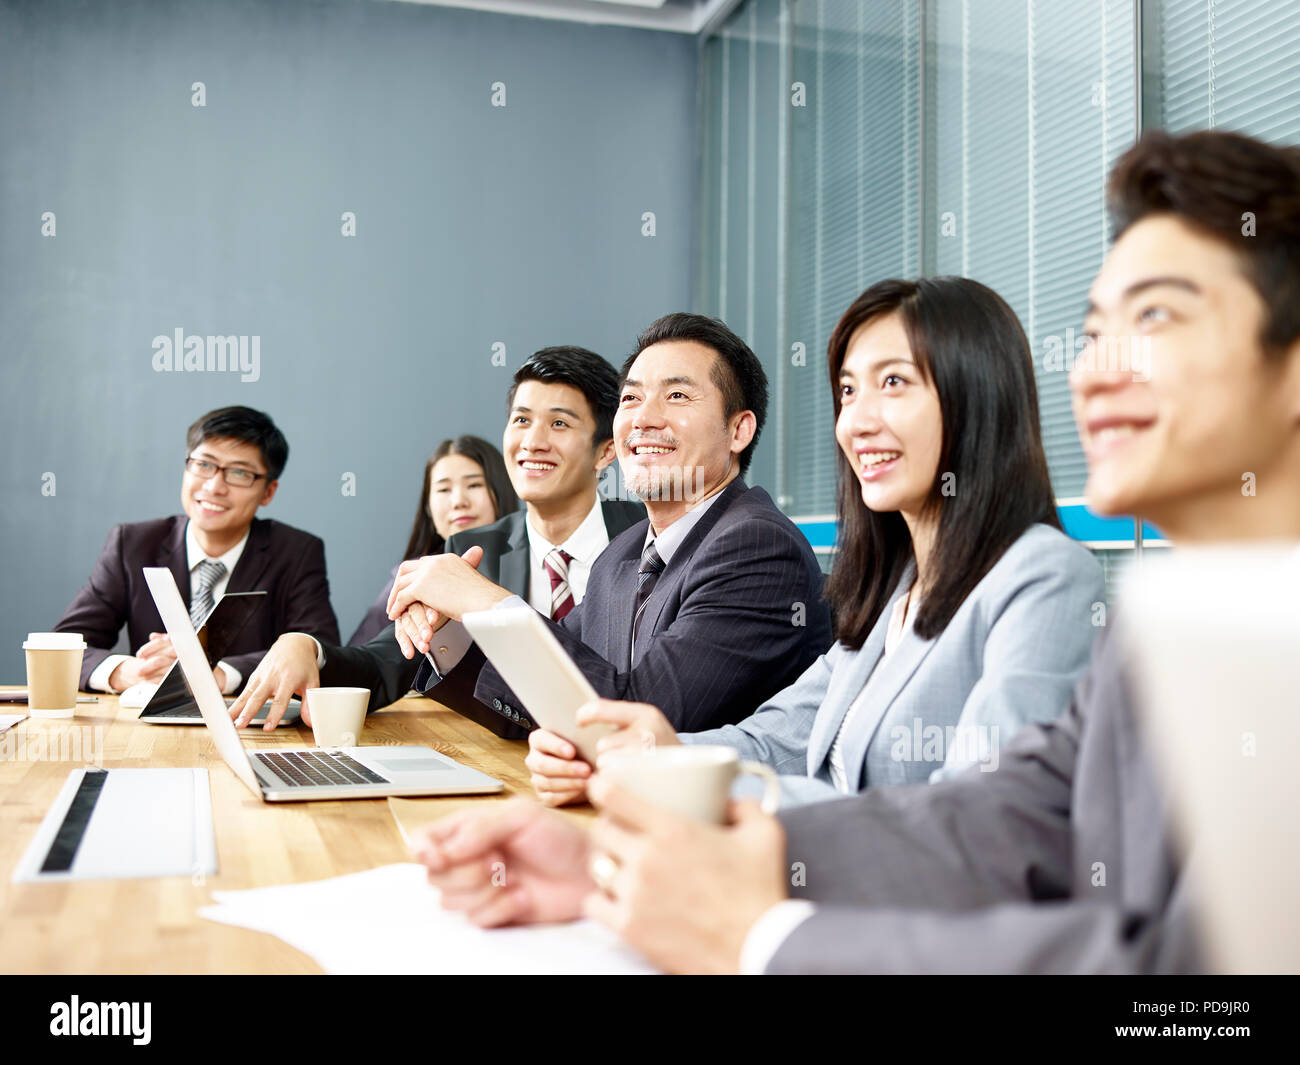 Gruppe von Glücklich lächelnde asiatische corporate business Leute hören Präsentation im Büro Konferenzraum Stockfoto